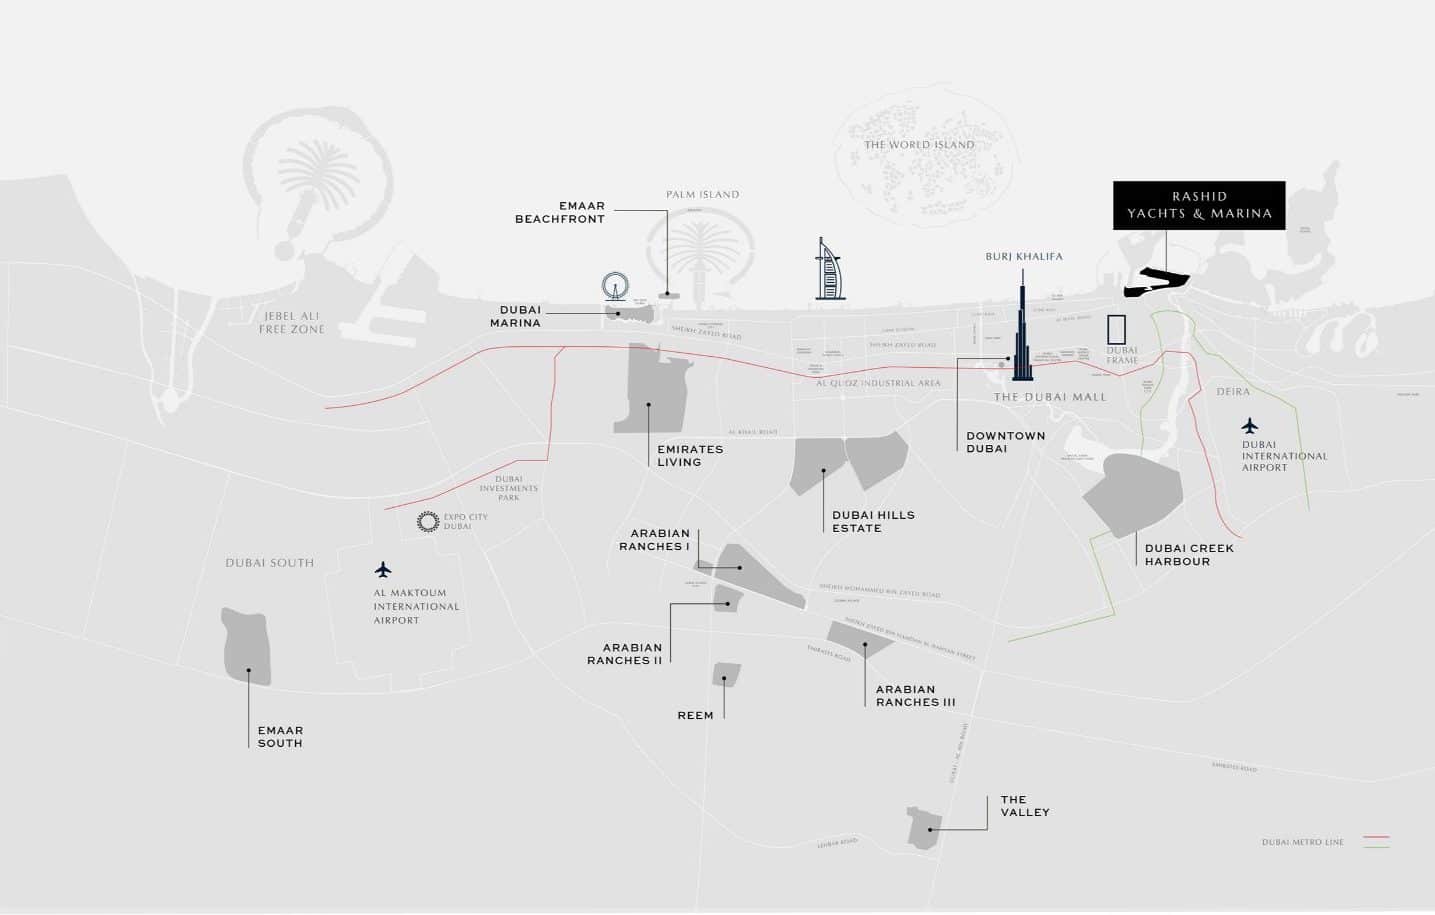 Rashid Yachts & Marina Location Map